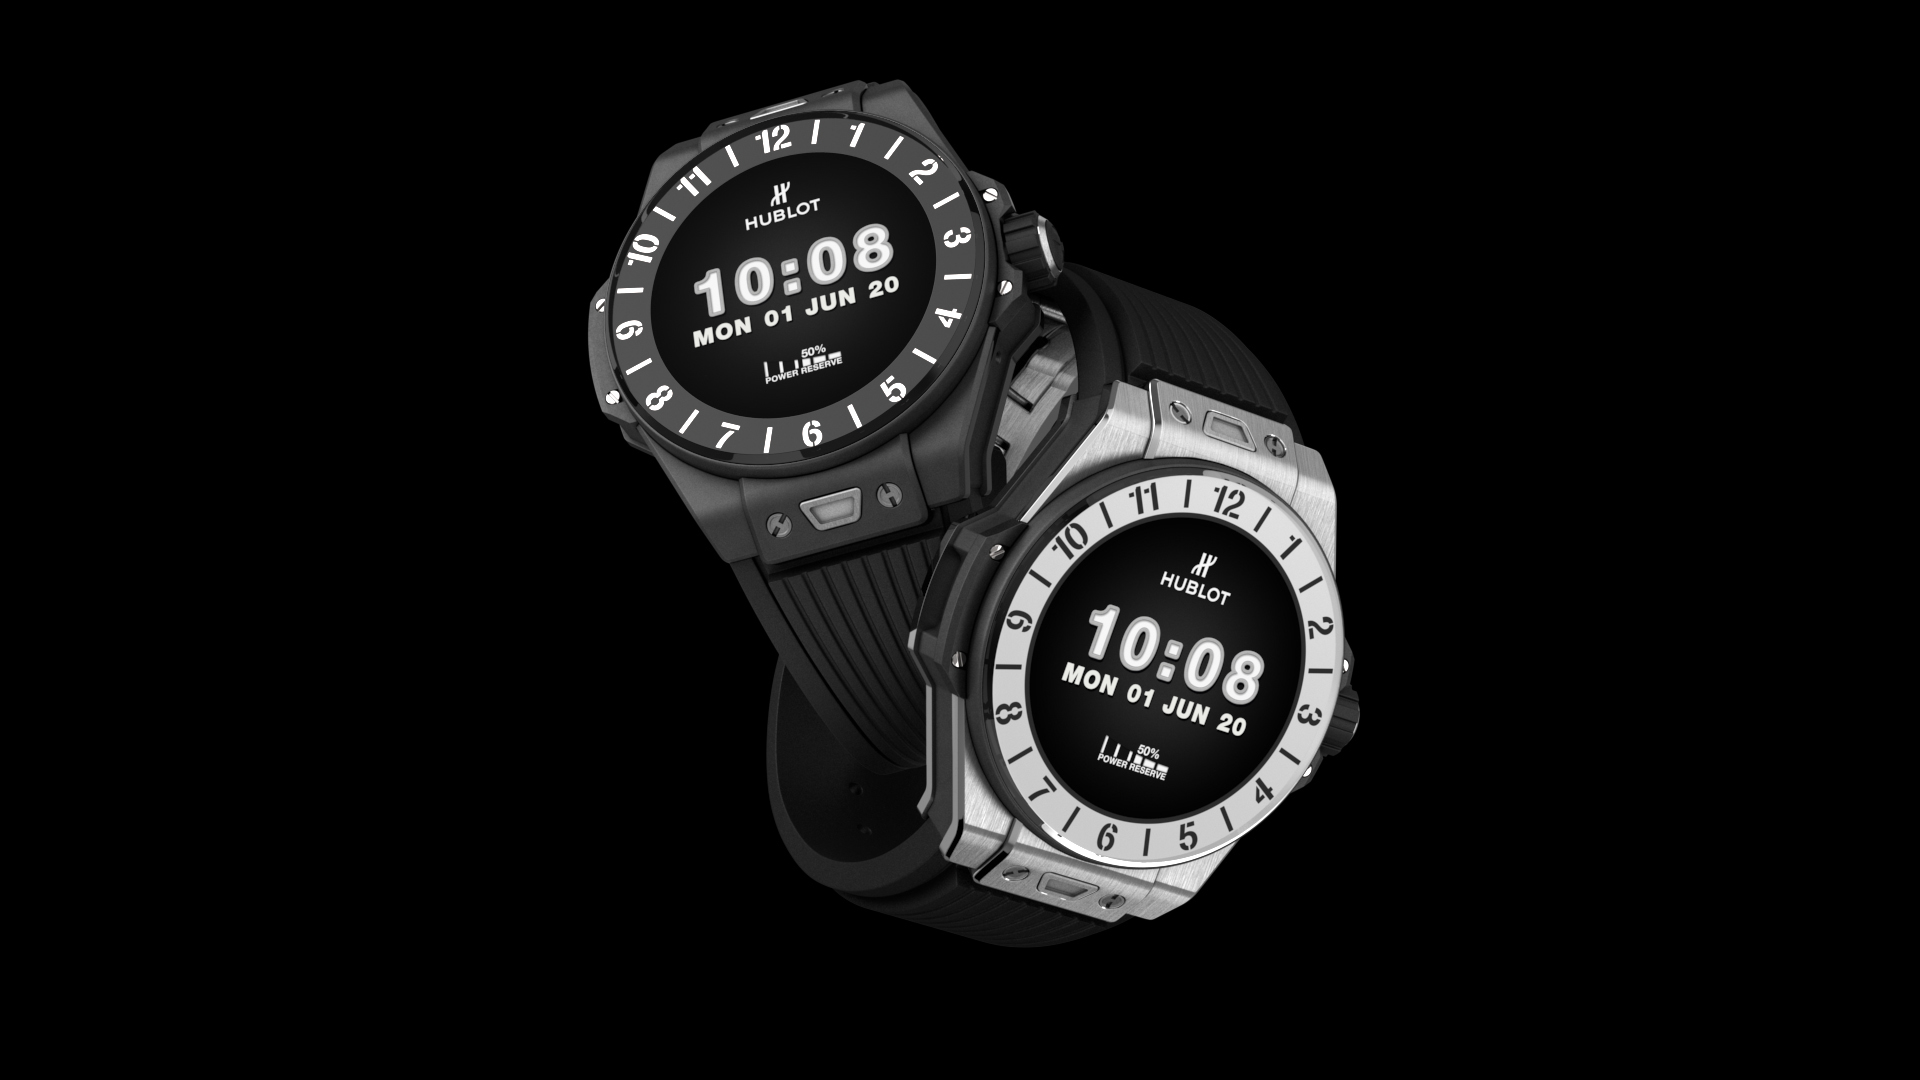 Hublot ra mắt đồng hồ Big Bang e, đồng hồ thông minh chạy Wear OS giá 5800 USD